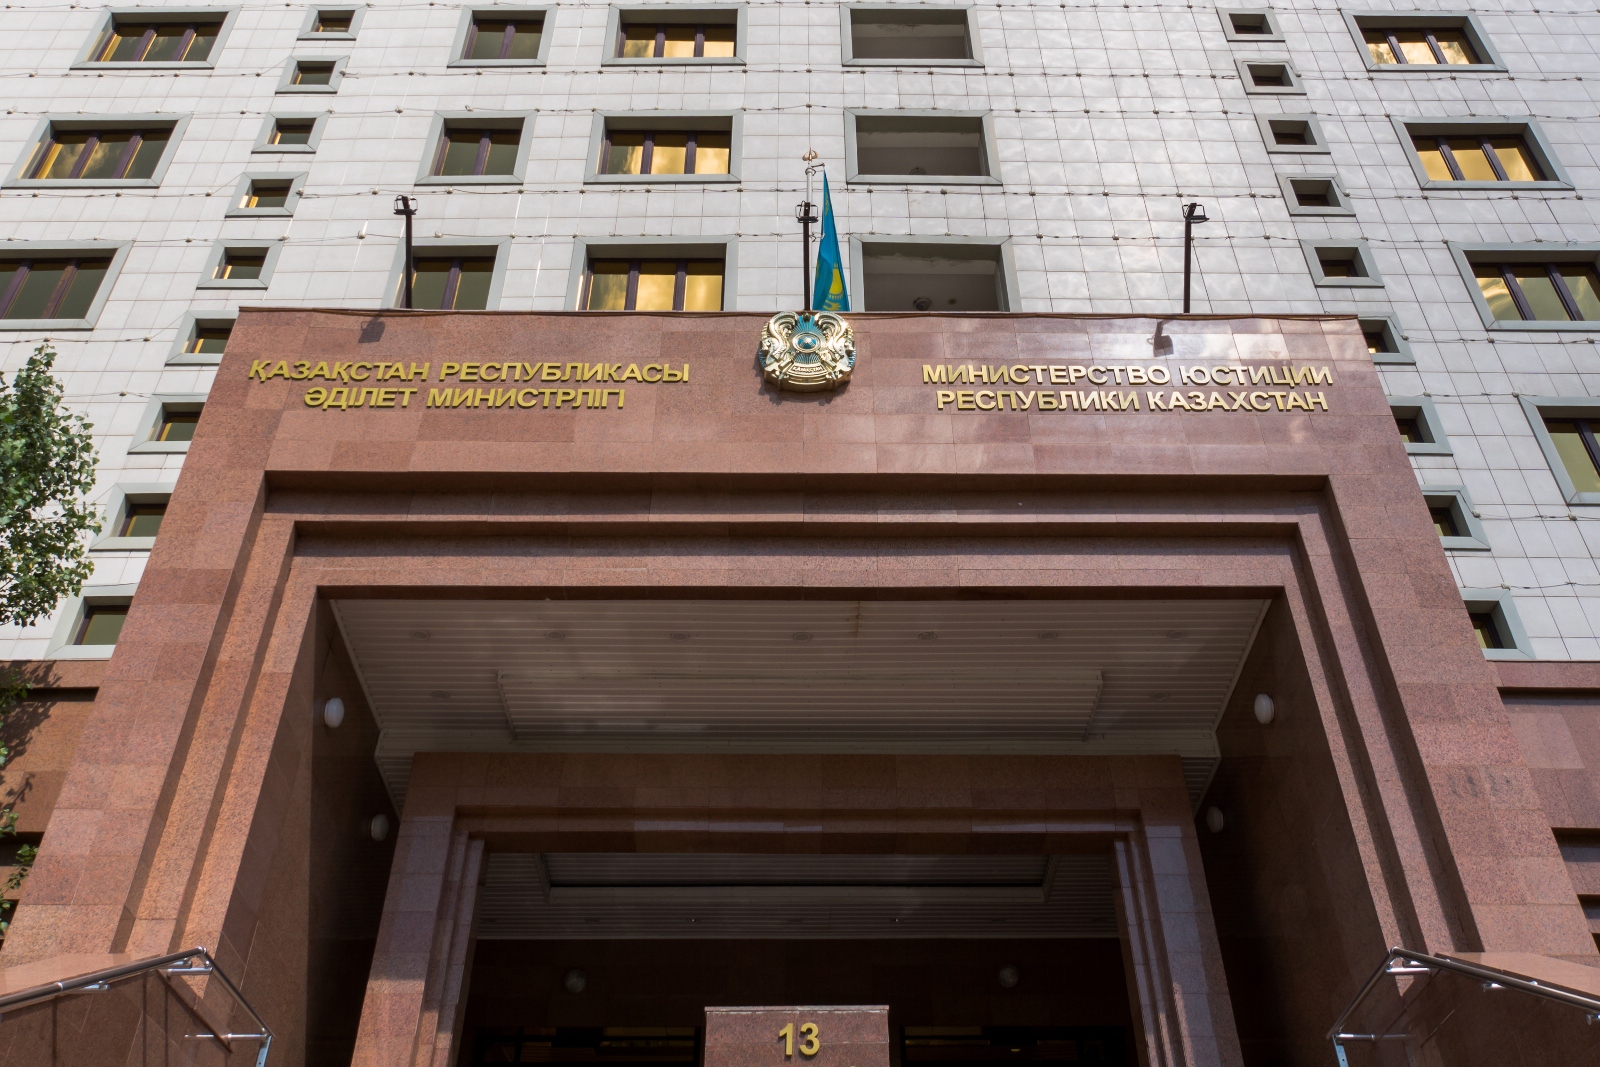 СПИСОК Кандидатов рекомендованных в соответствии с протоколом конкурсной комиссии Министерства юстиции Республики Казахстан № 27-2 от 10 августа 2022 года